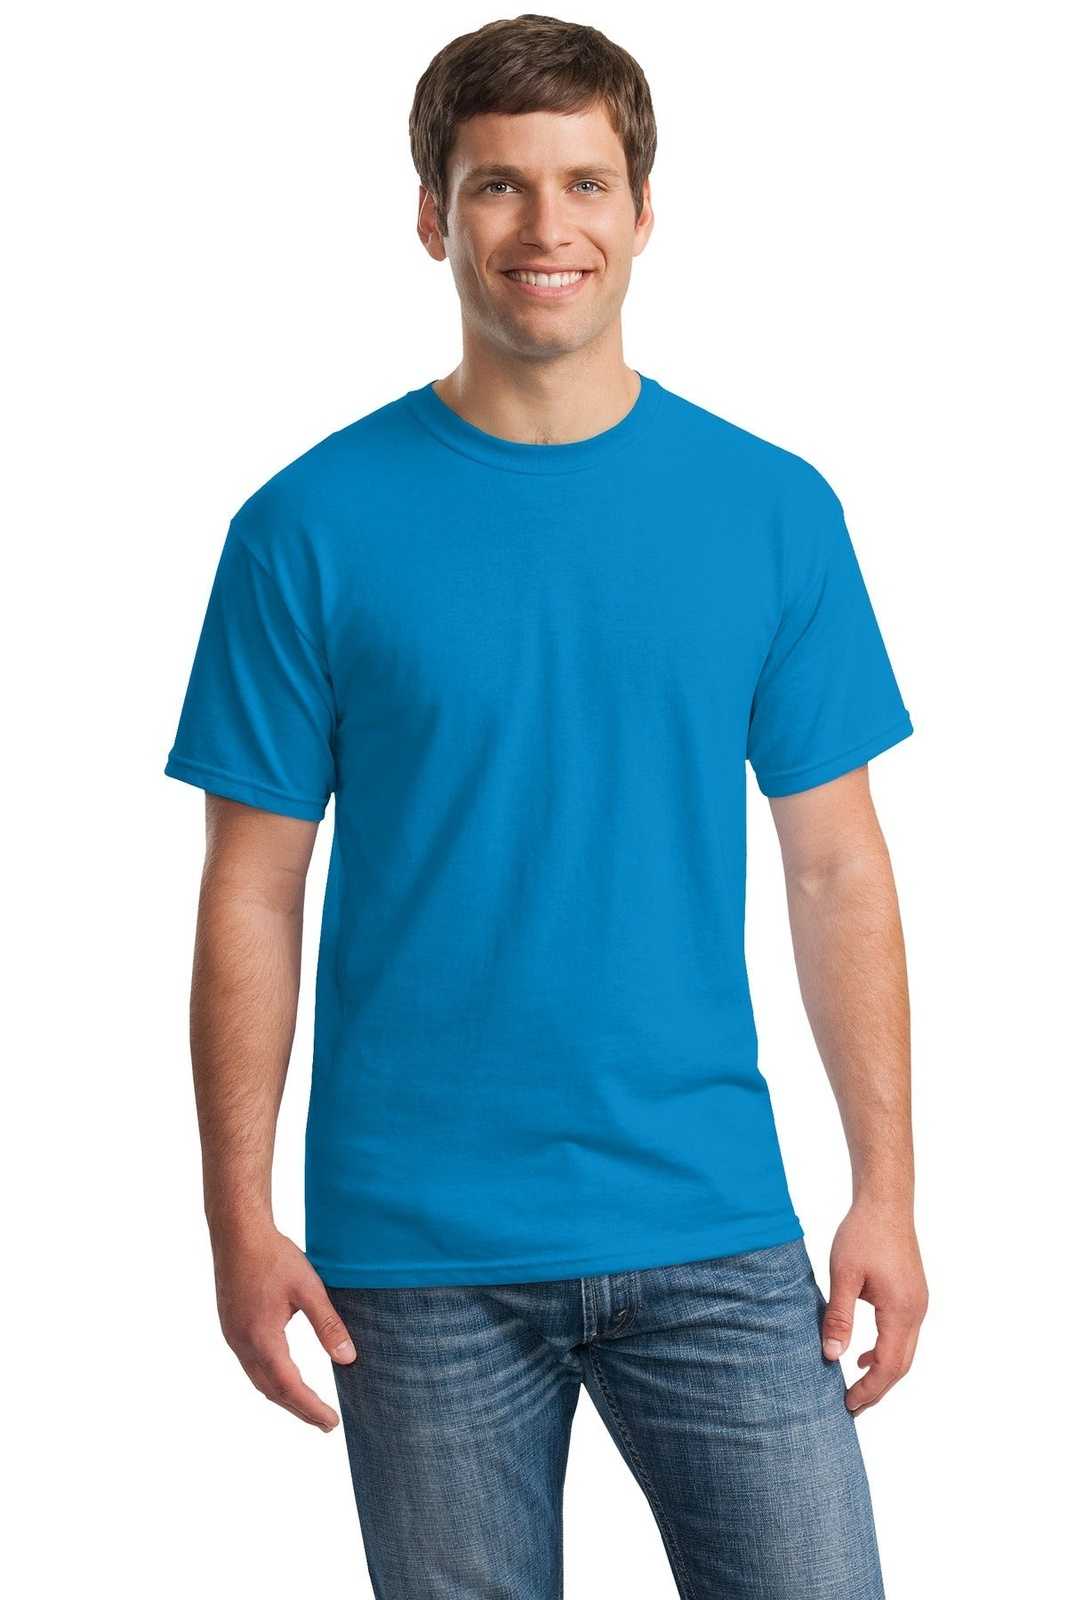 Gildan 5000 Heavy Cotton 100% Cotton T-Shirt - Sapphire - HIT a Double